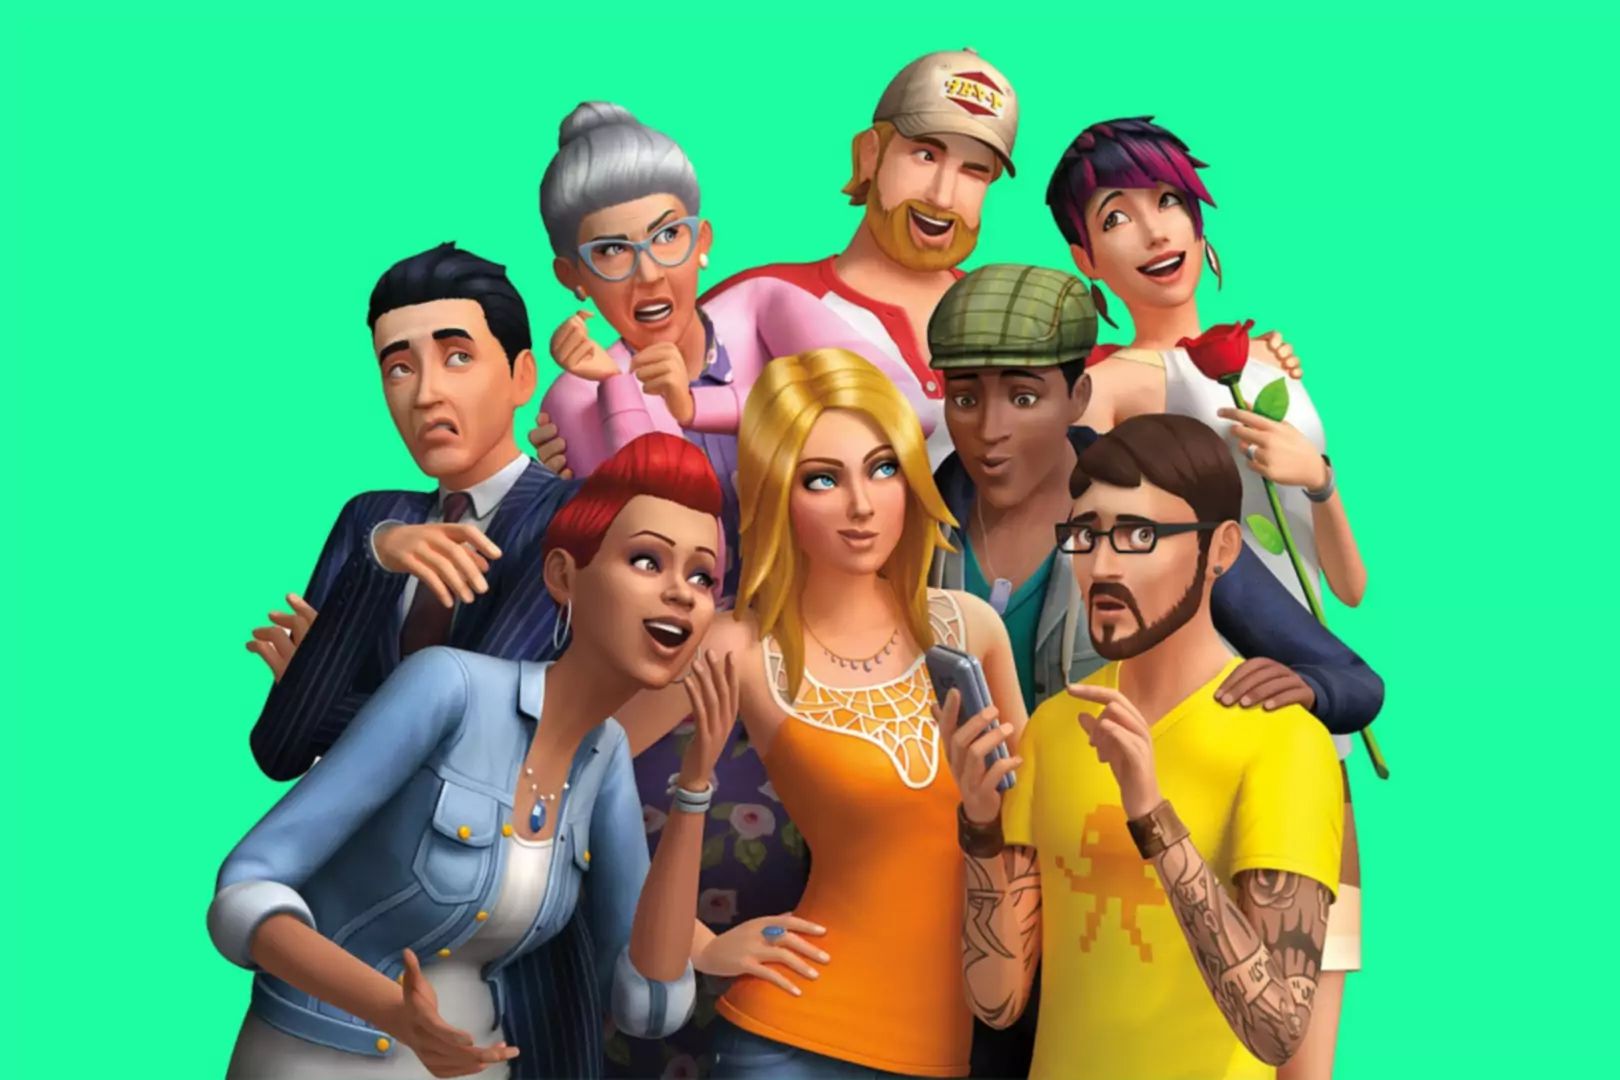 Personaggi Sims in CGI che posano insieme e fanno espressioni stupide